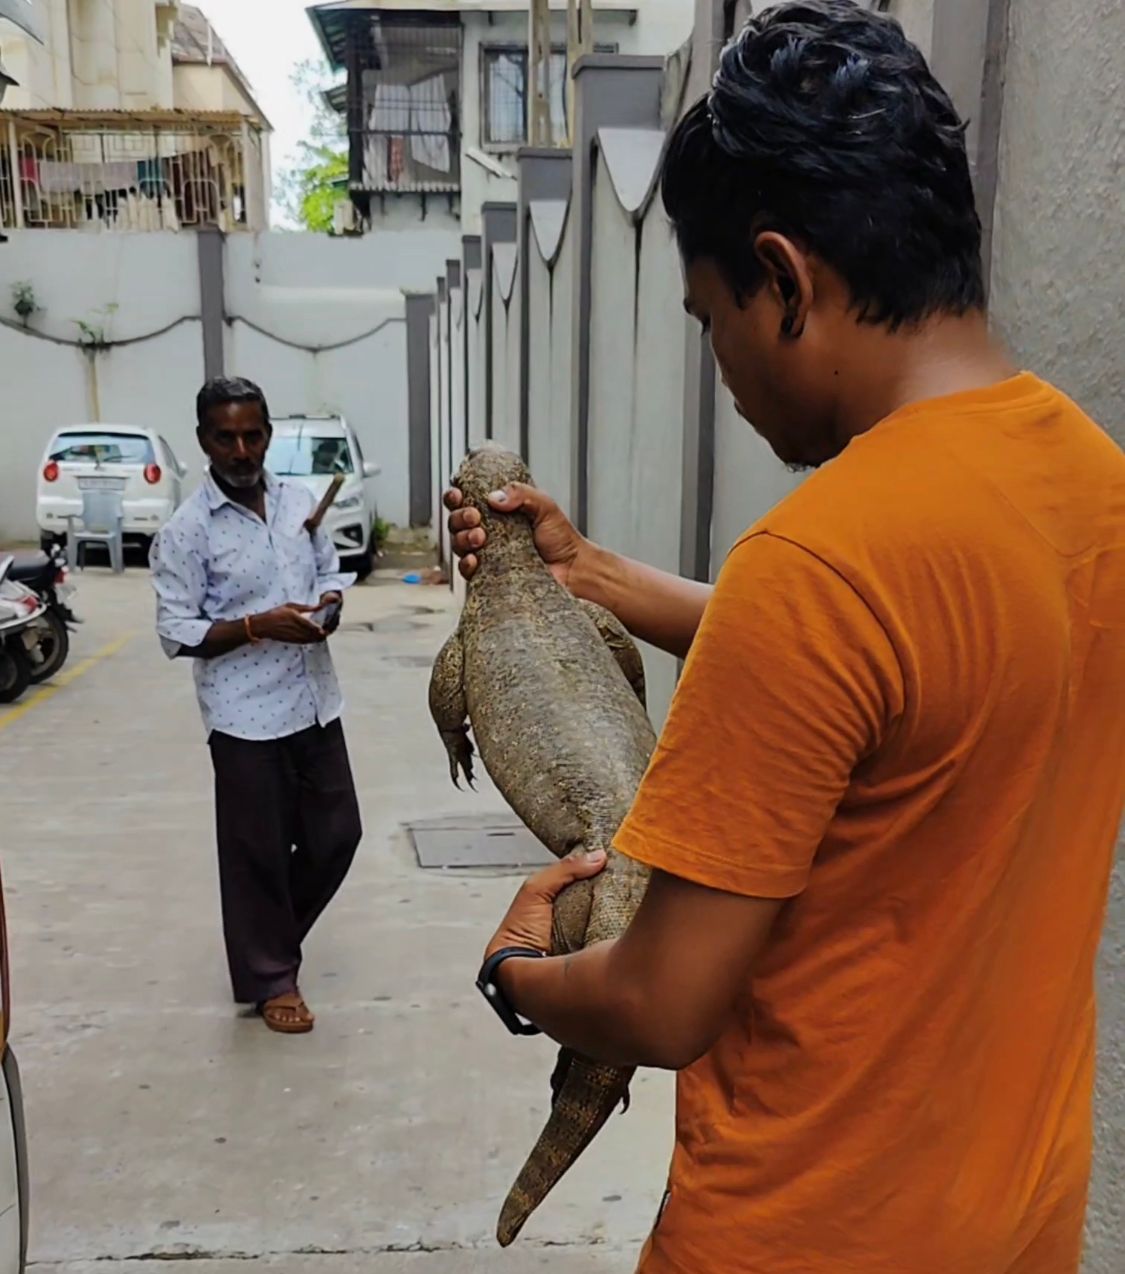 Surat monitor lizard: એપાર્ટમેન્ટમાં 3.5 ફુટની મોનિટર લિઝાર્ડને જોઈ લોકોનો જીવ અધ્ધર